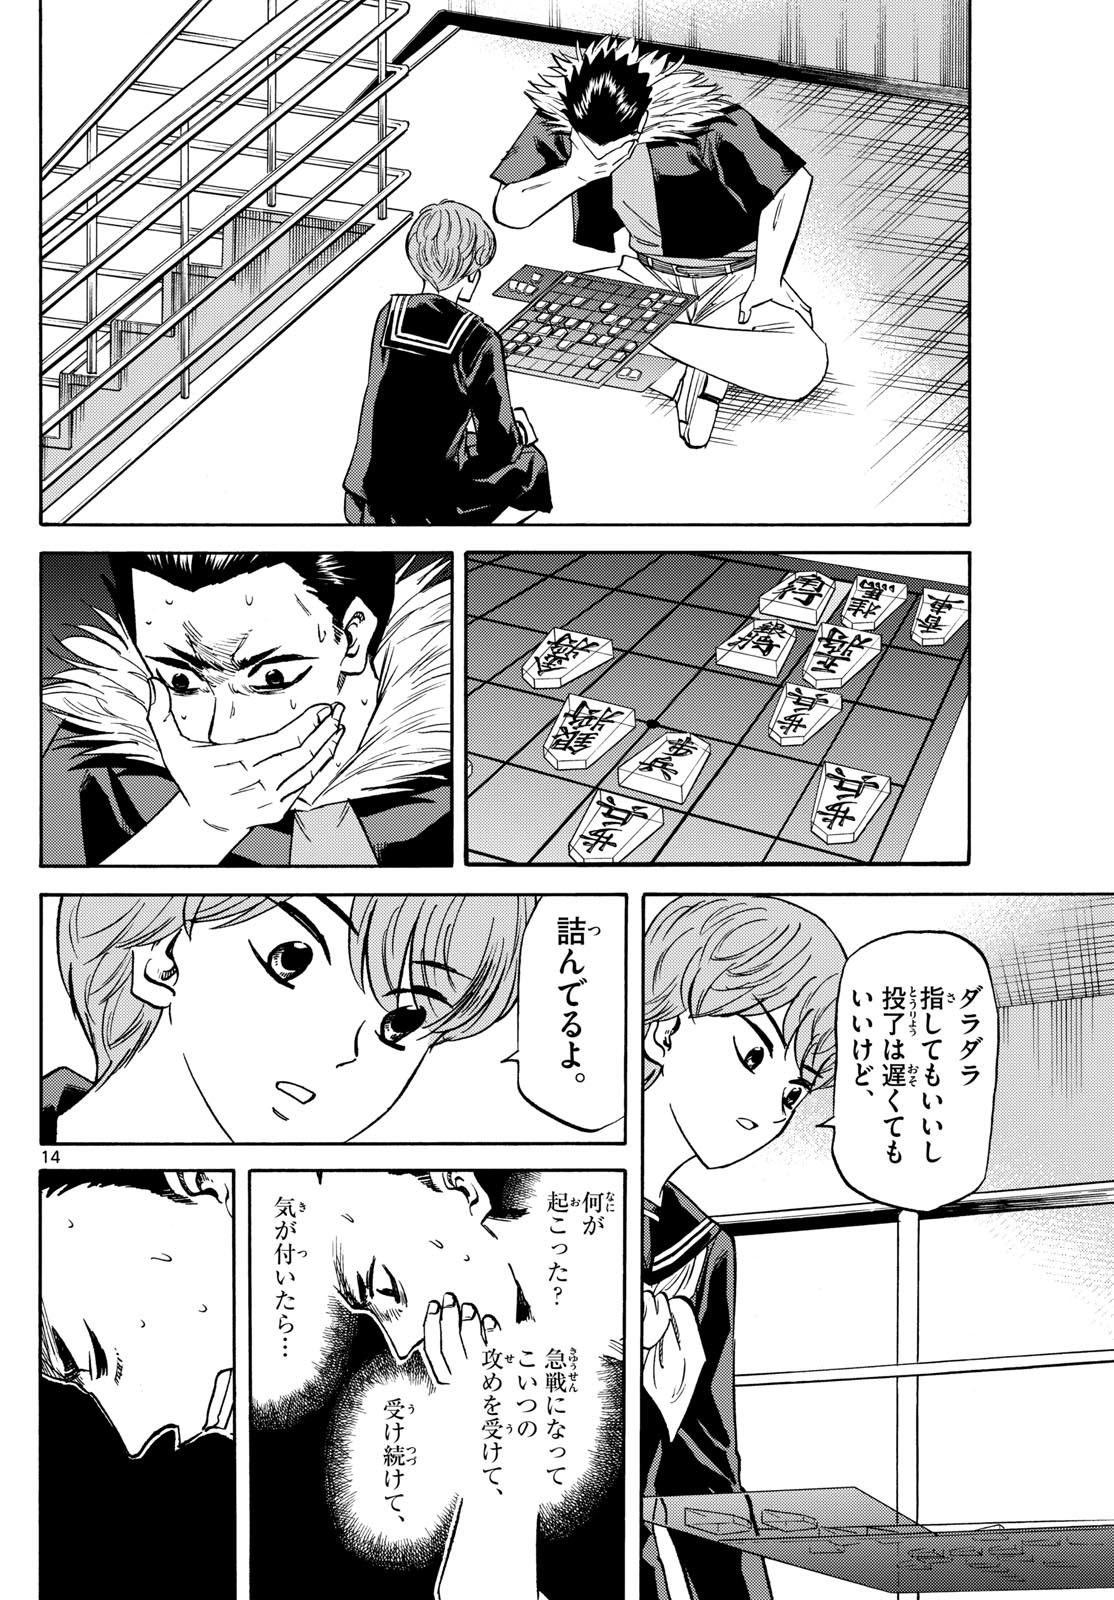 Tatsu to Ichigo - Chapter 183 - Page 14